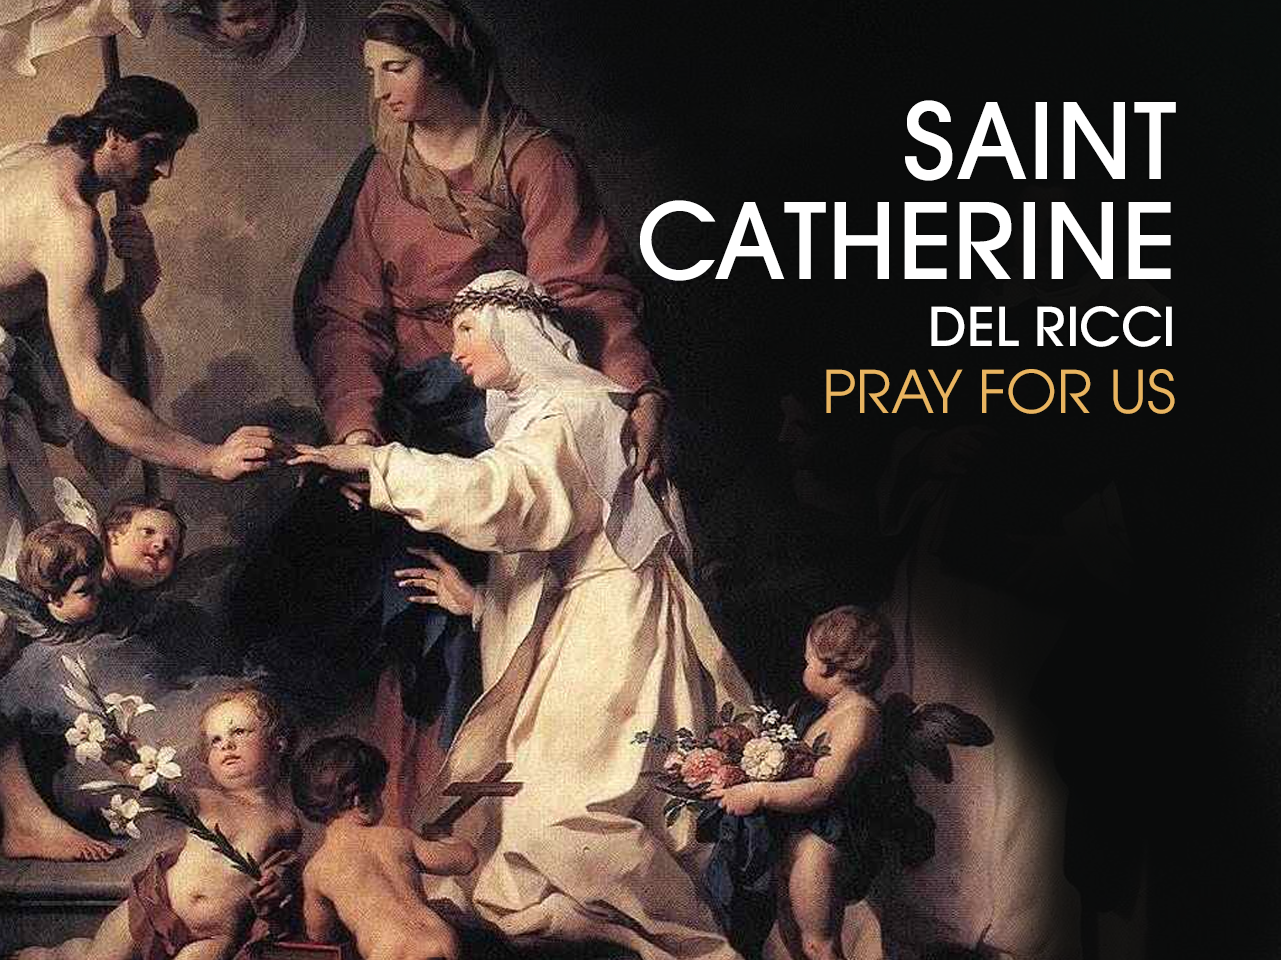 St. Catherine del Ricci